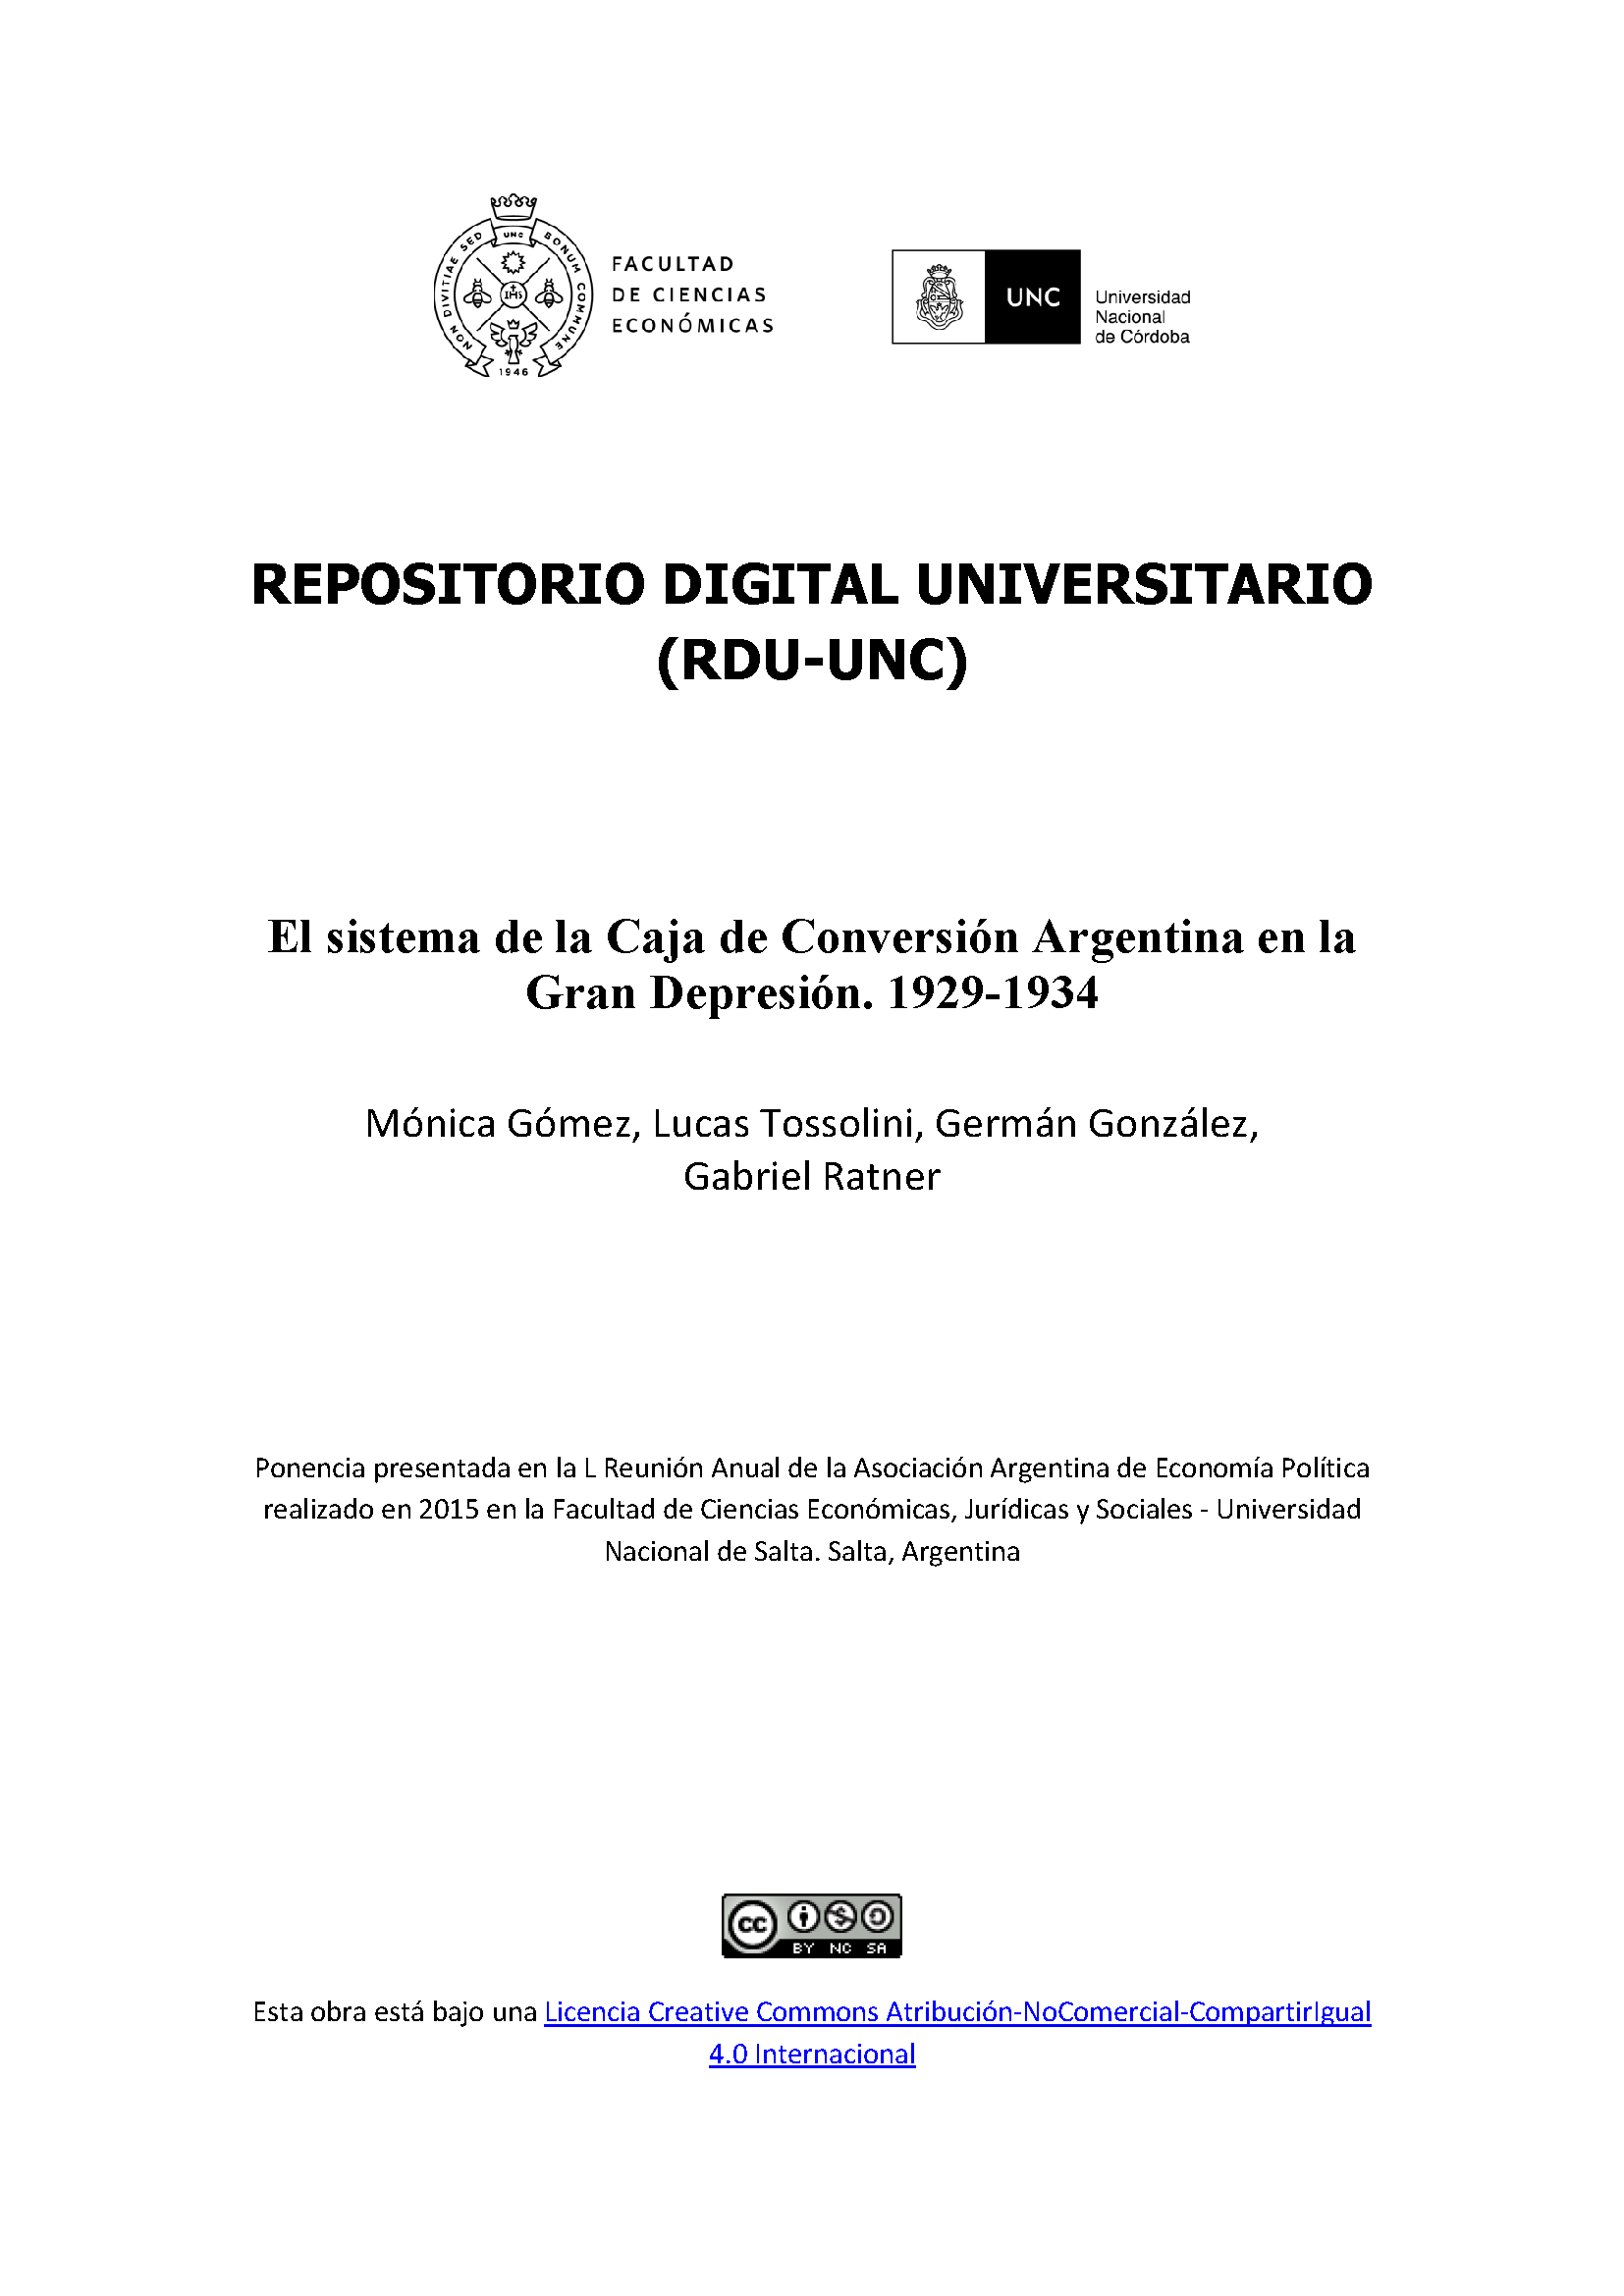 El sistema de la Caja de Conversión Argentina en la Gran Depresión.  1929-1934